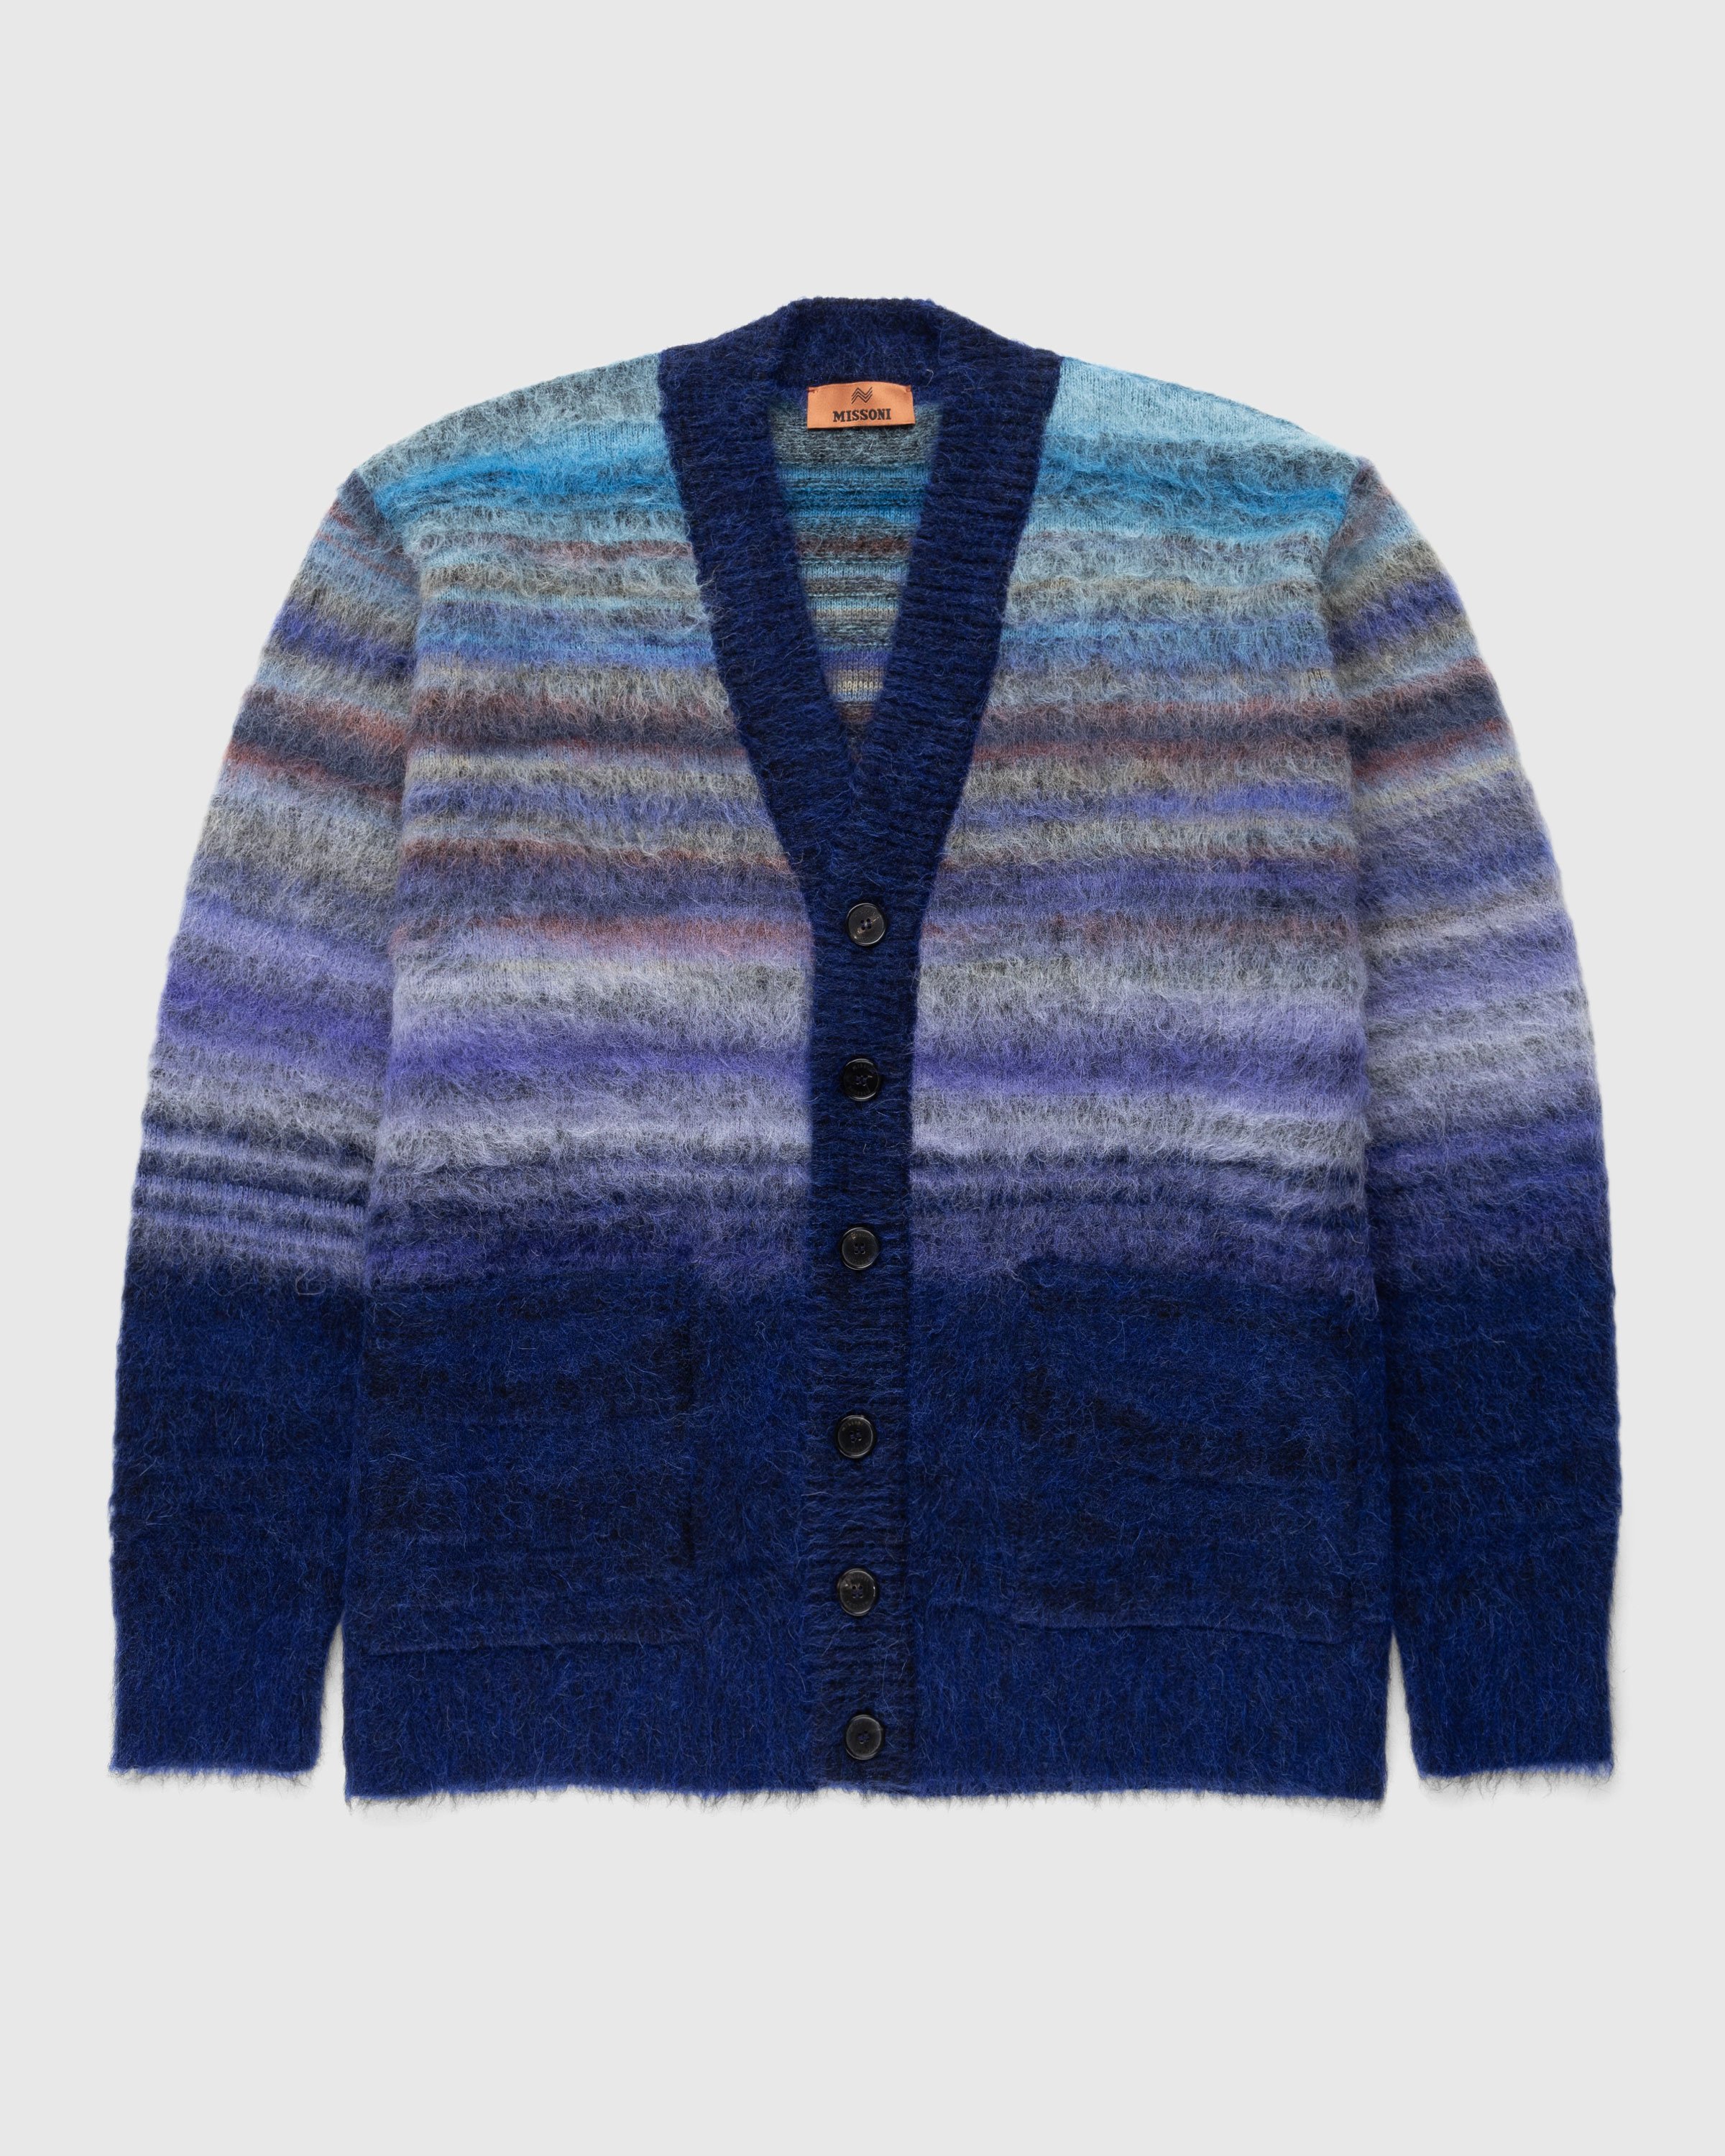 Missoni - Wool Cardigan Multi - Clothing - Multi - Image 1